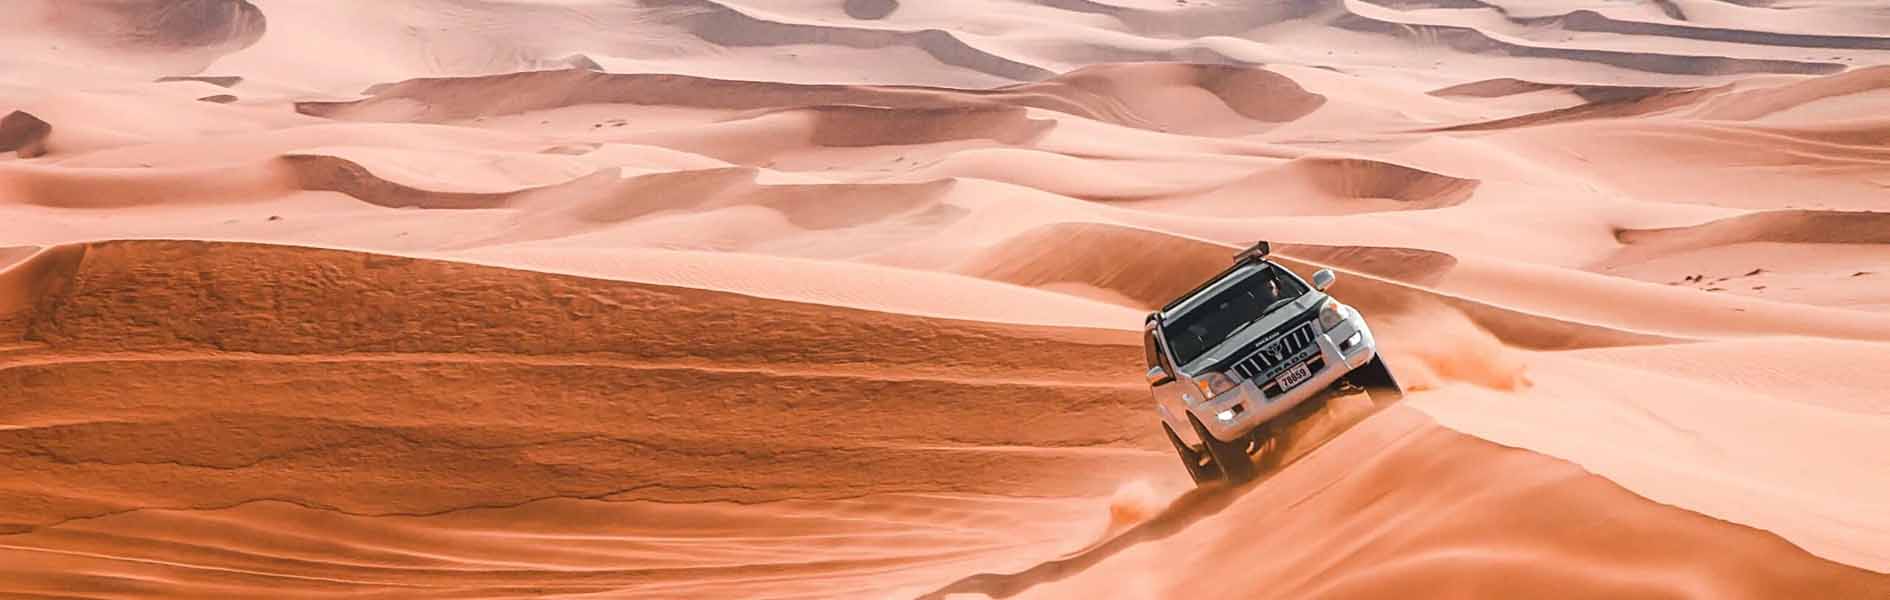 사막 듄베이싱을 즐기자!